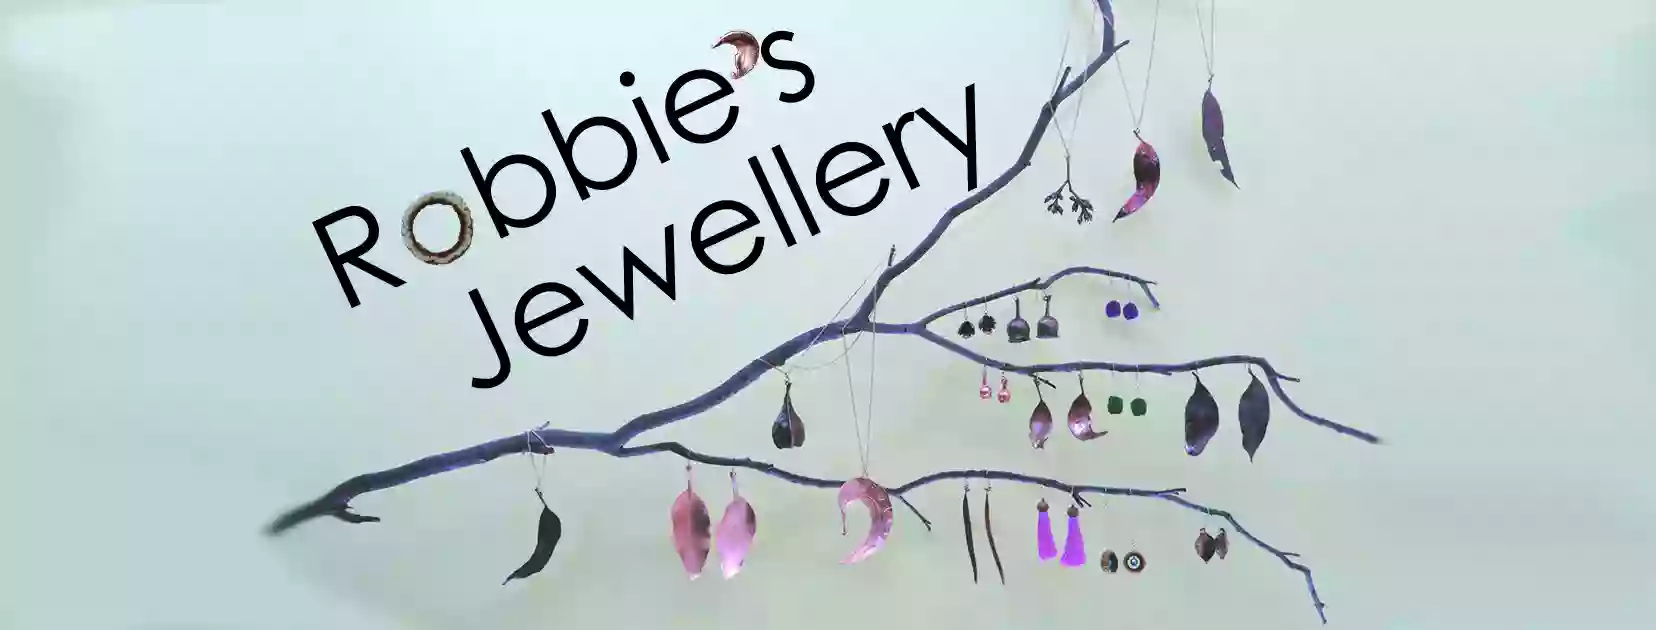 Robbie's Jewellery